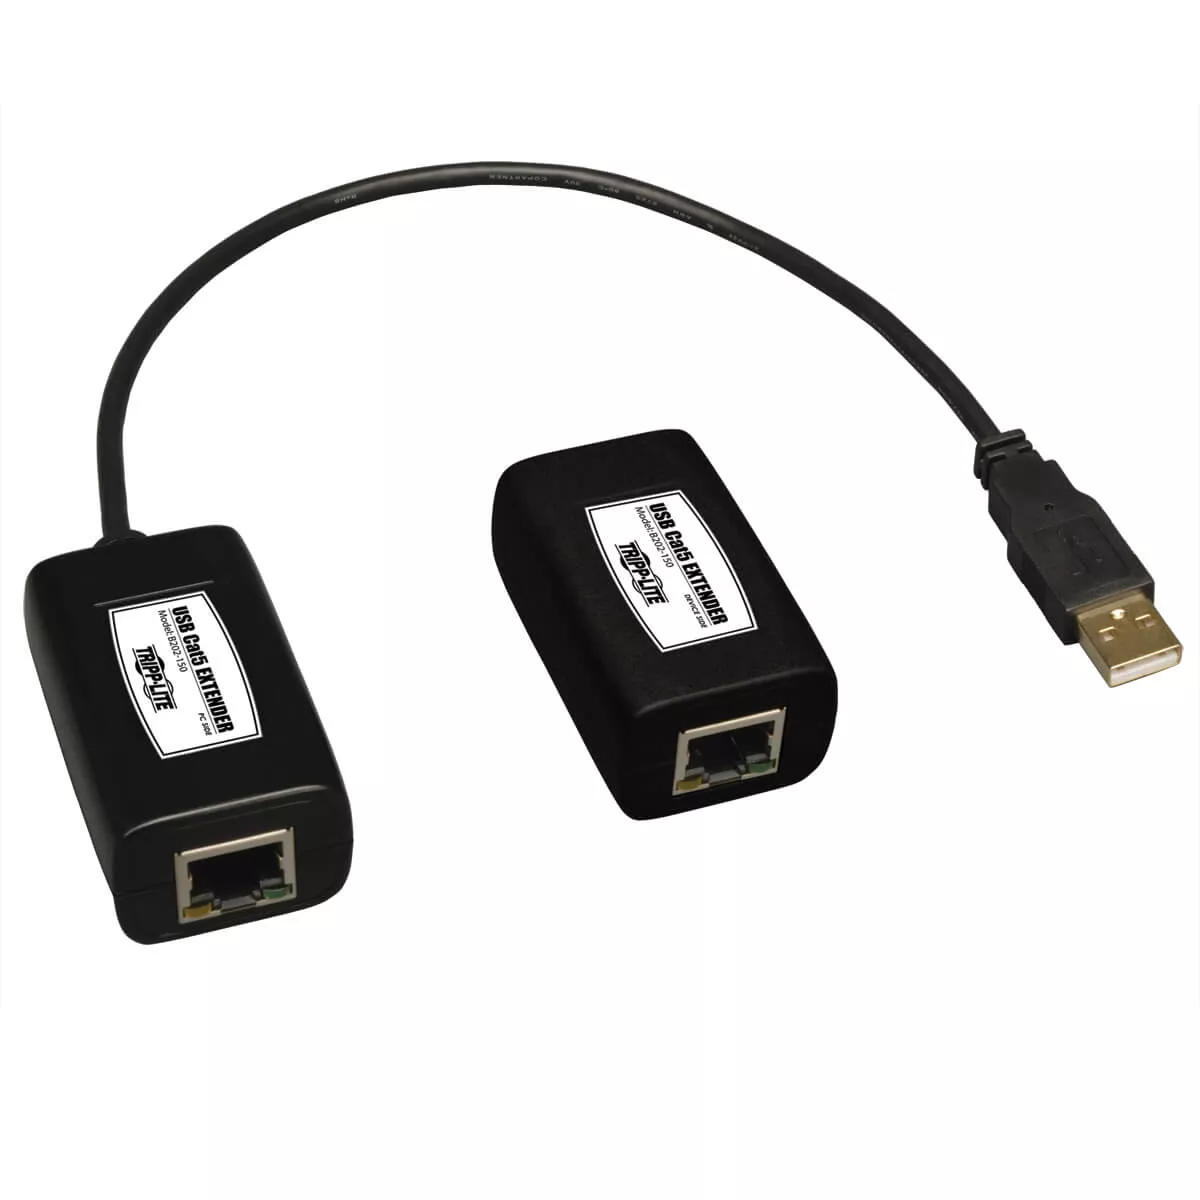 Achat Câble divers EATON TRIPPLITE 1-Port USB over Cat5/Cat6 Extender sur hello RSE